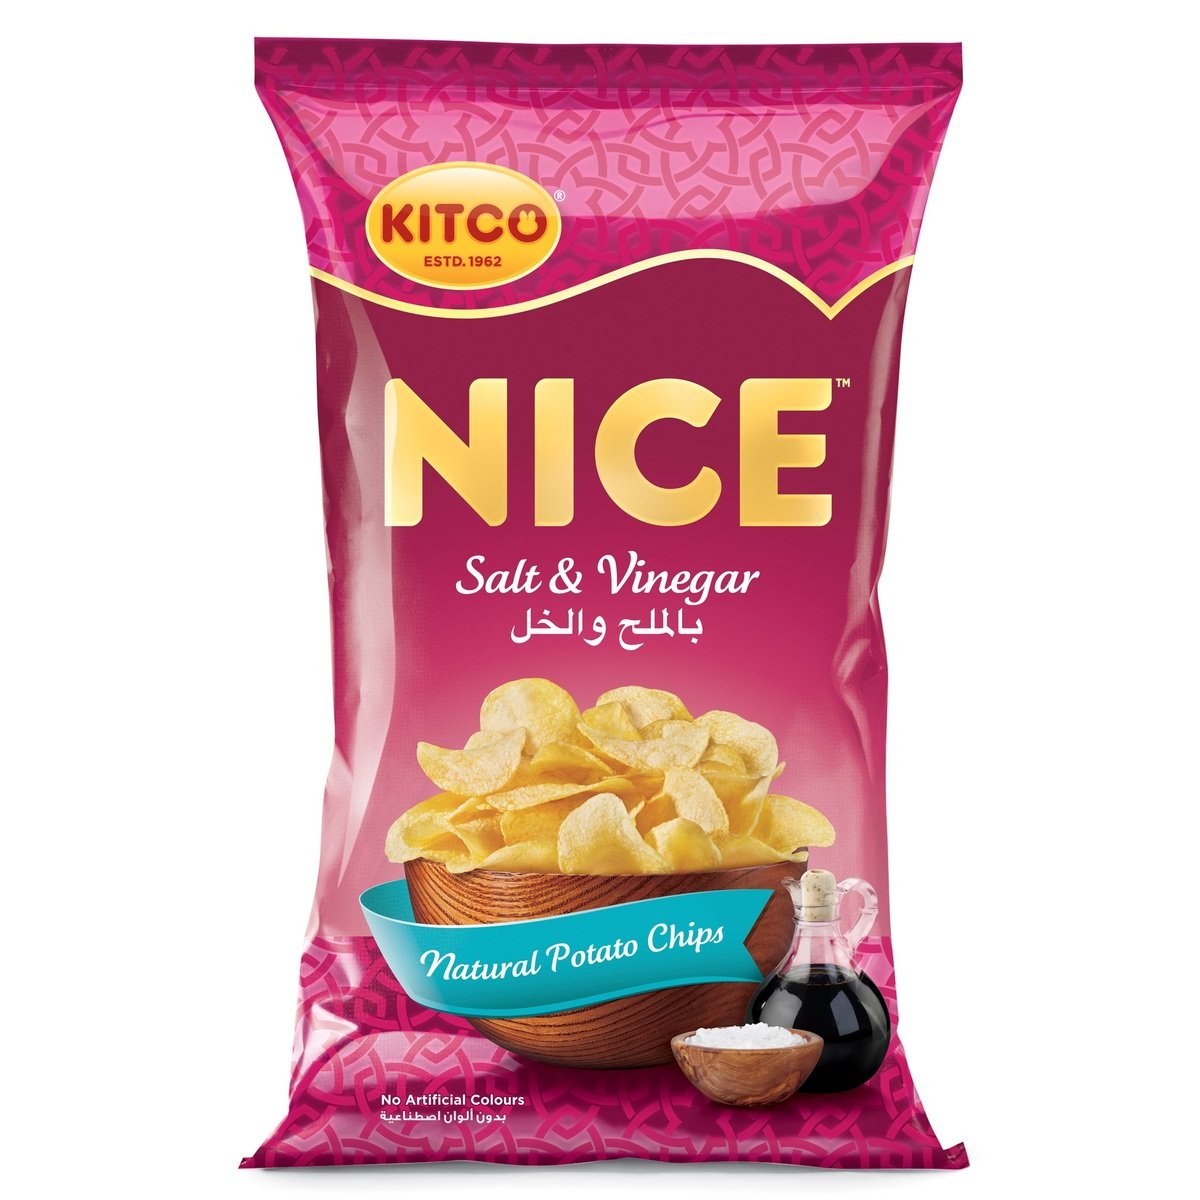 Kitco Nice Salt & Vinegar Potato Chips 210 g